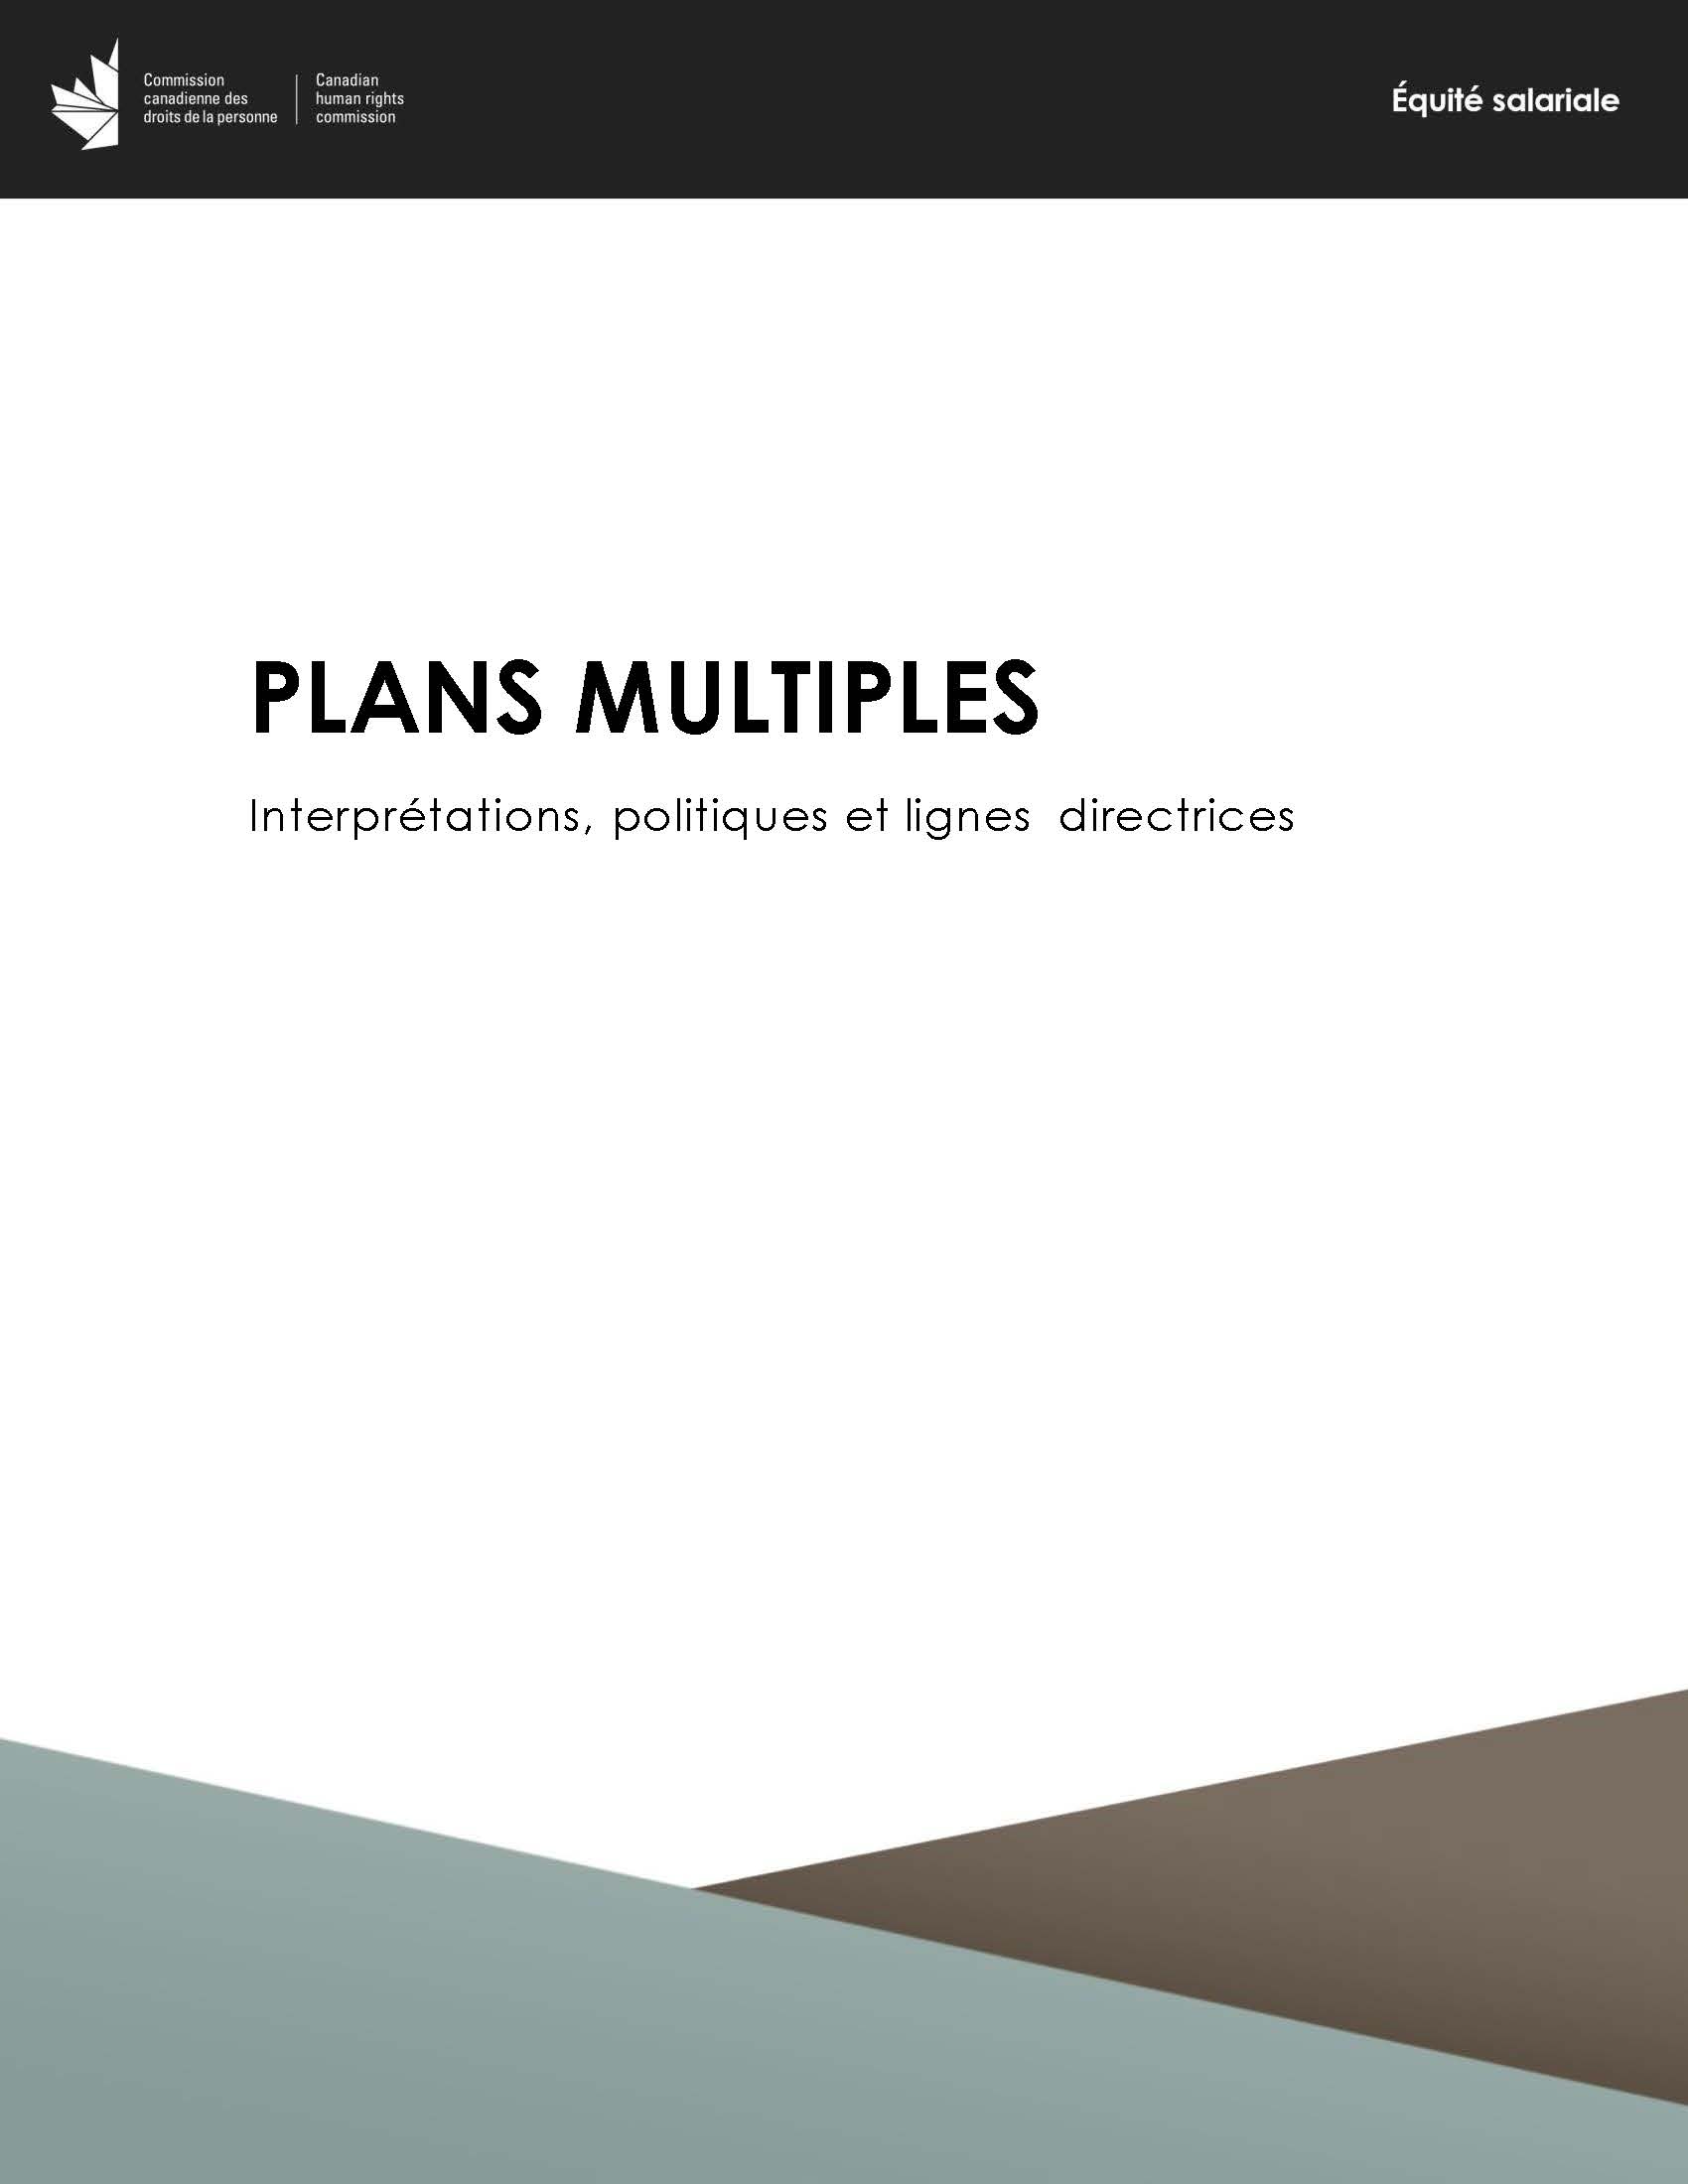 Plans multiples - Interprétations, politiques et lignes directrices